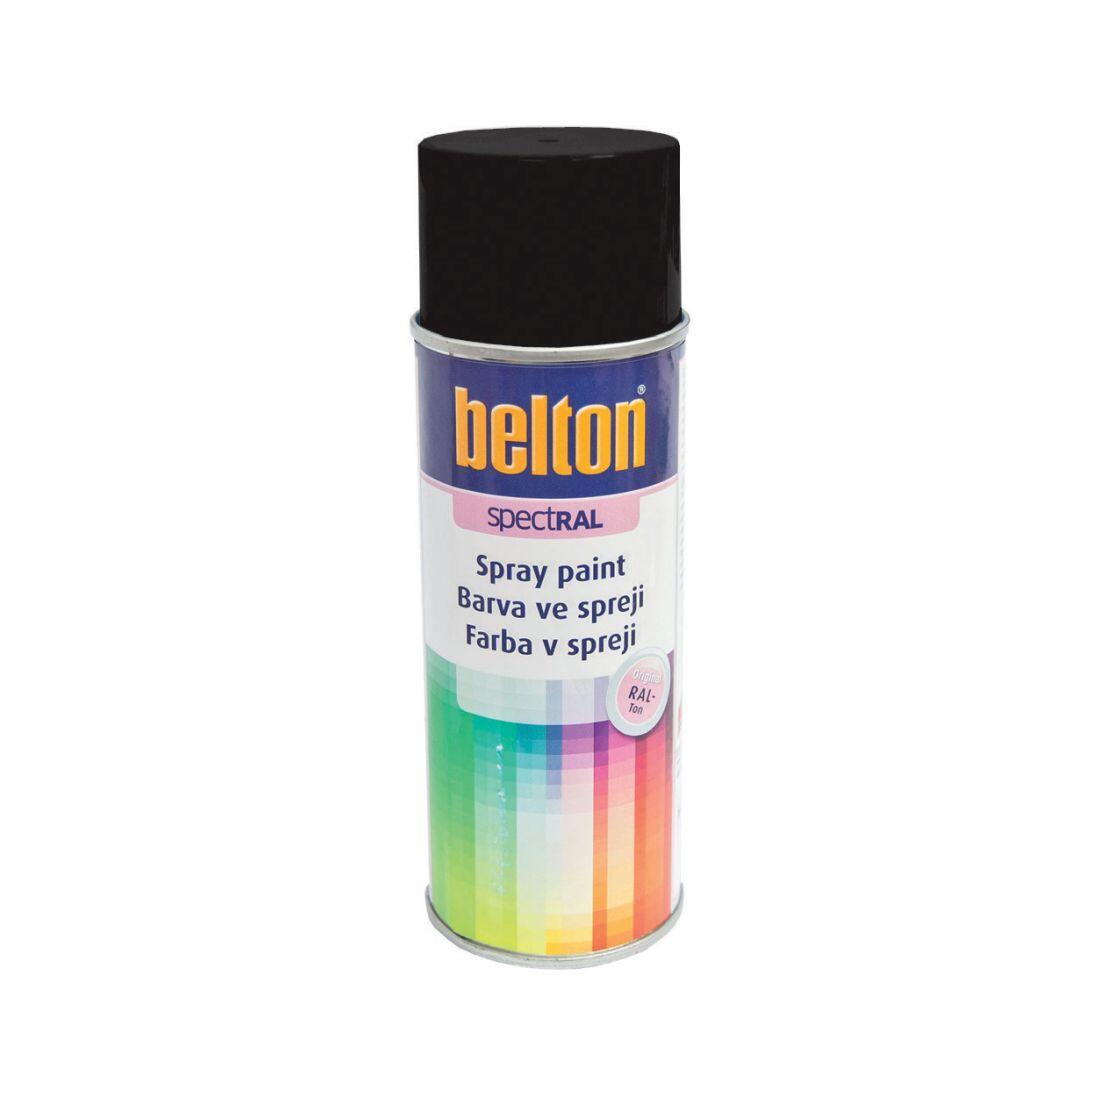 barva ve spreji BELTON RAL 9005, 400ml ČER 0.31 Kg MAXMIX Sklad14 825120 35